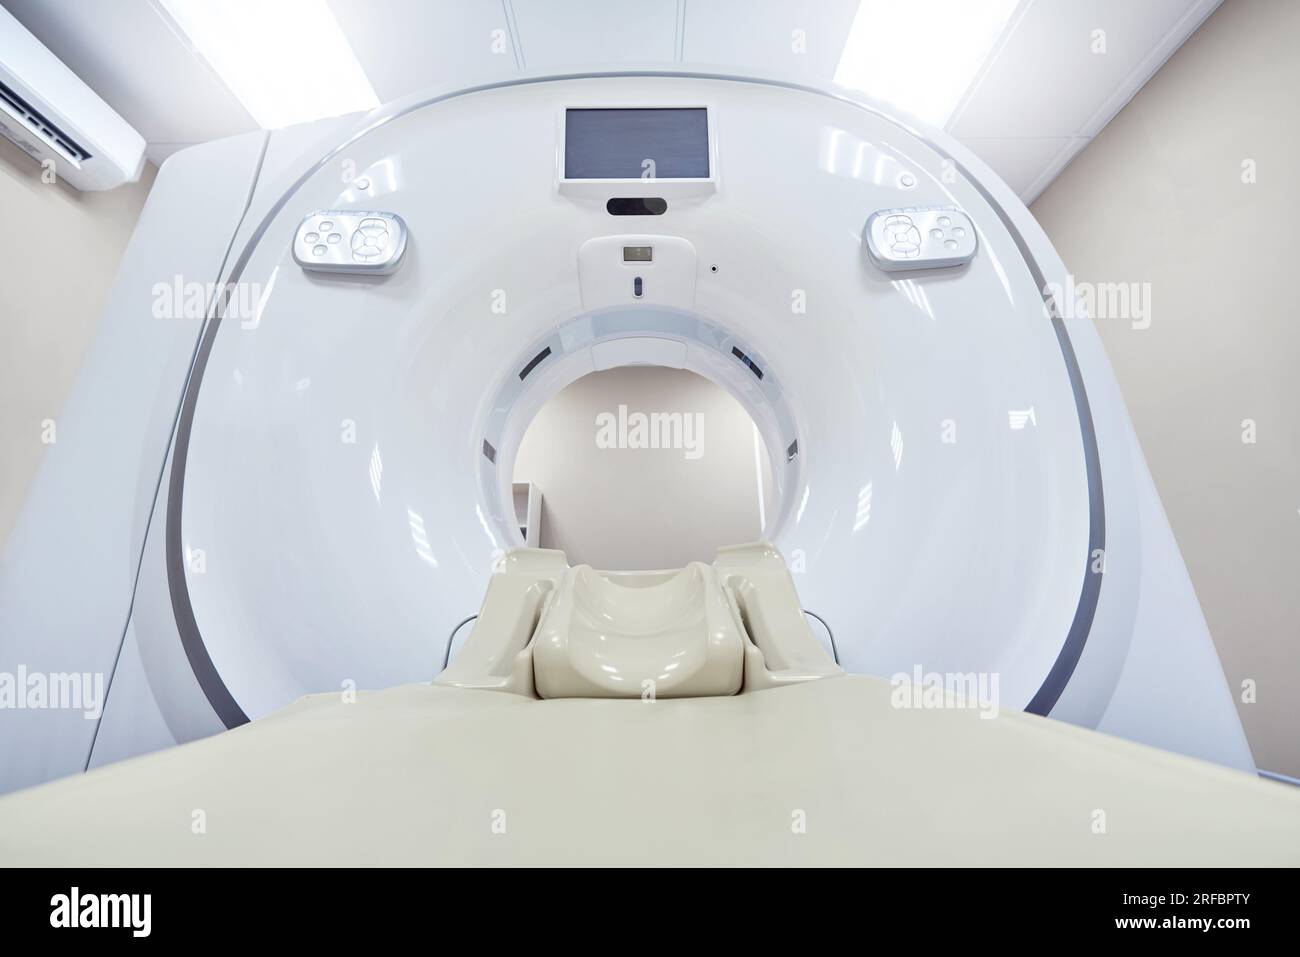 MRI - Magnetic resonance imaging equipment Stock Photo